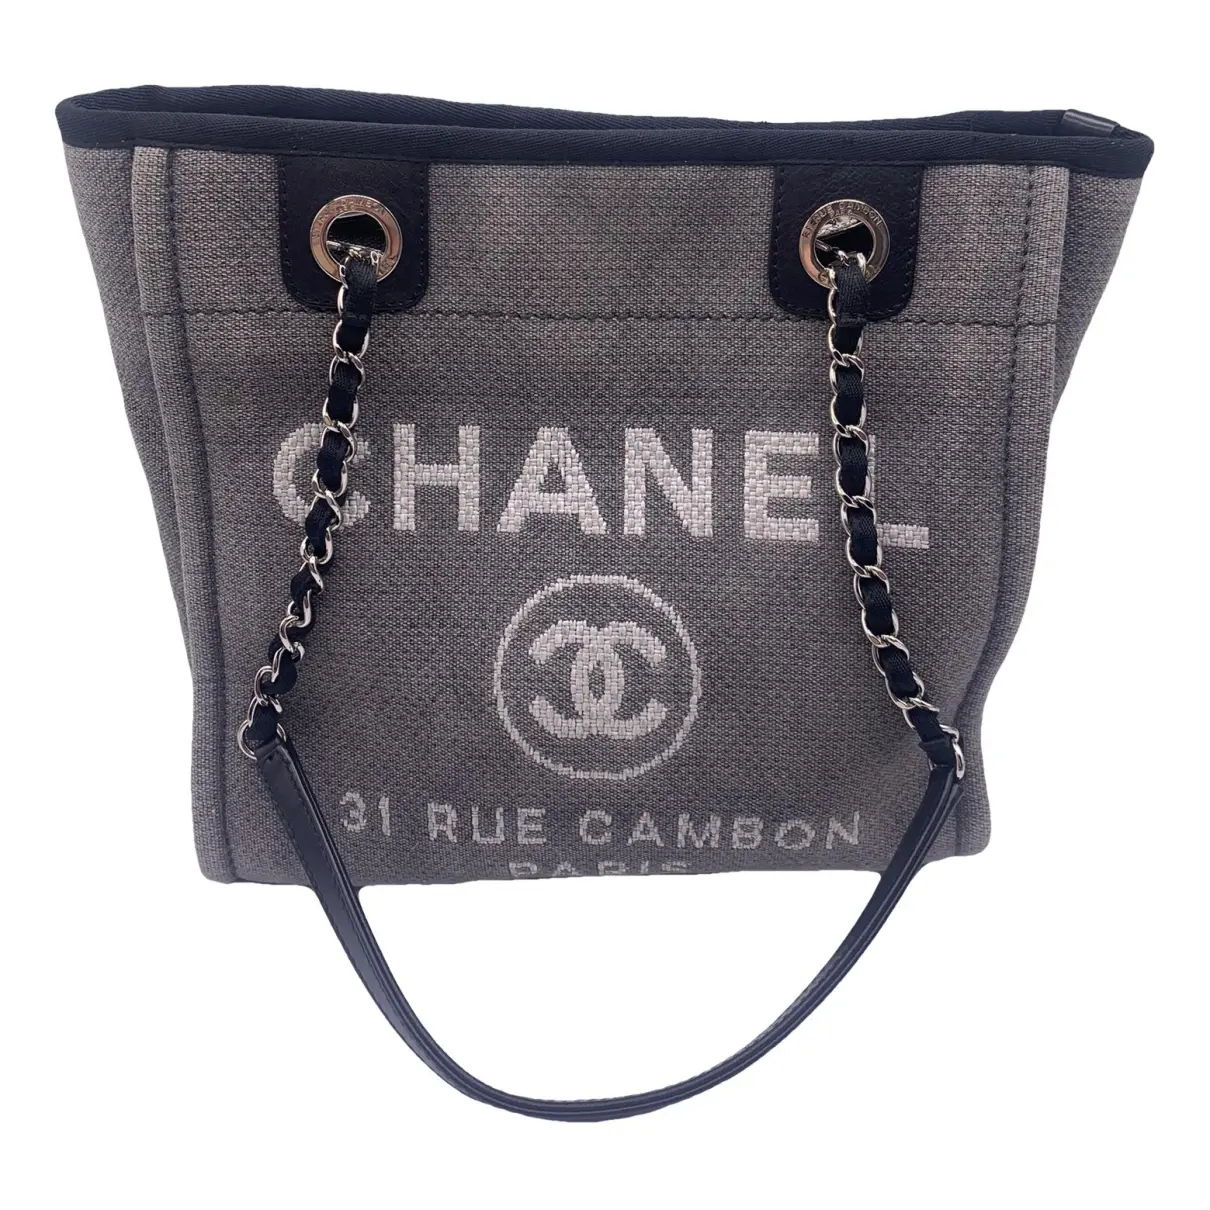 Deauville cloth tote Chanel